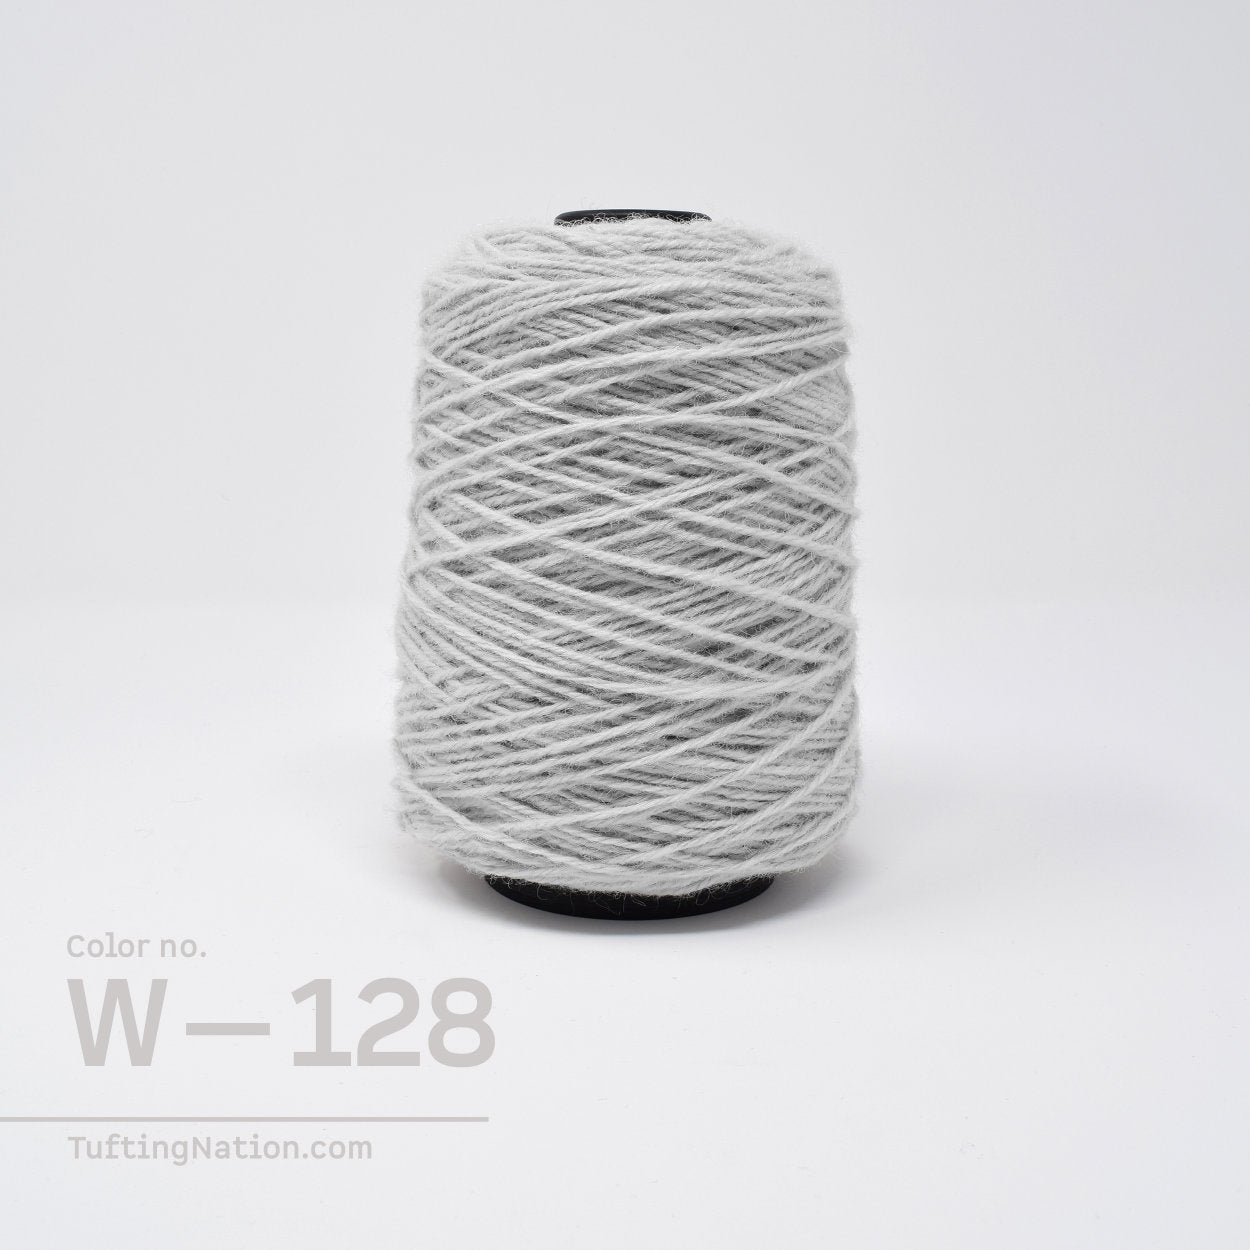 Pale gray Rug Tufting Yarn on Spool 100% Wool Canada | TuftingNation